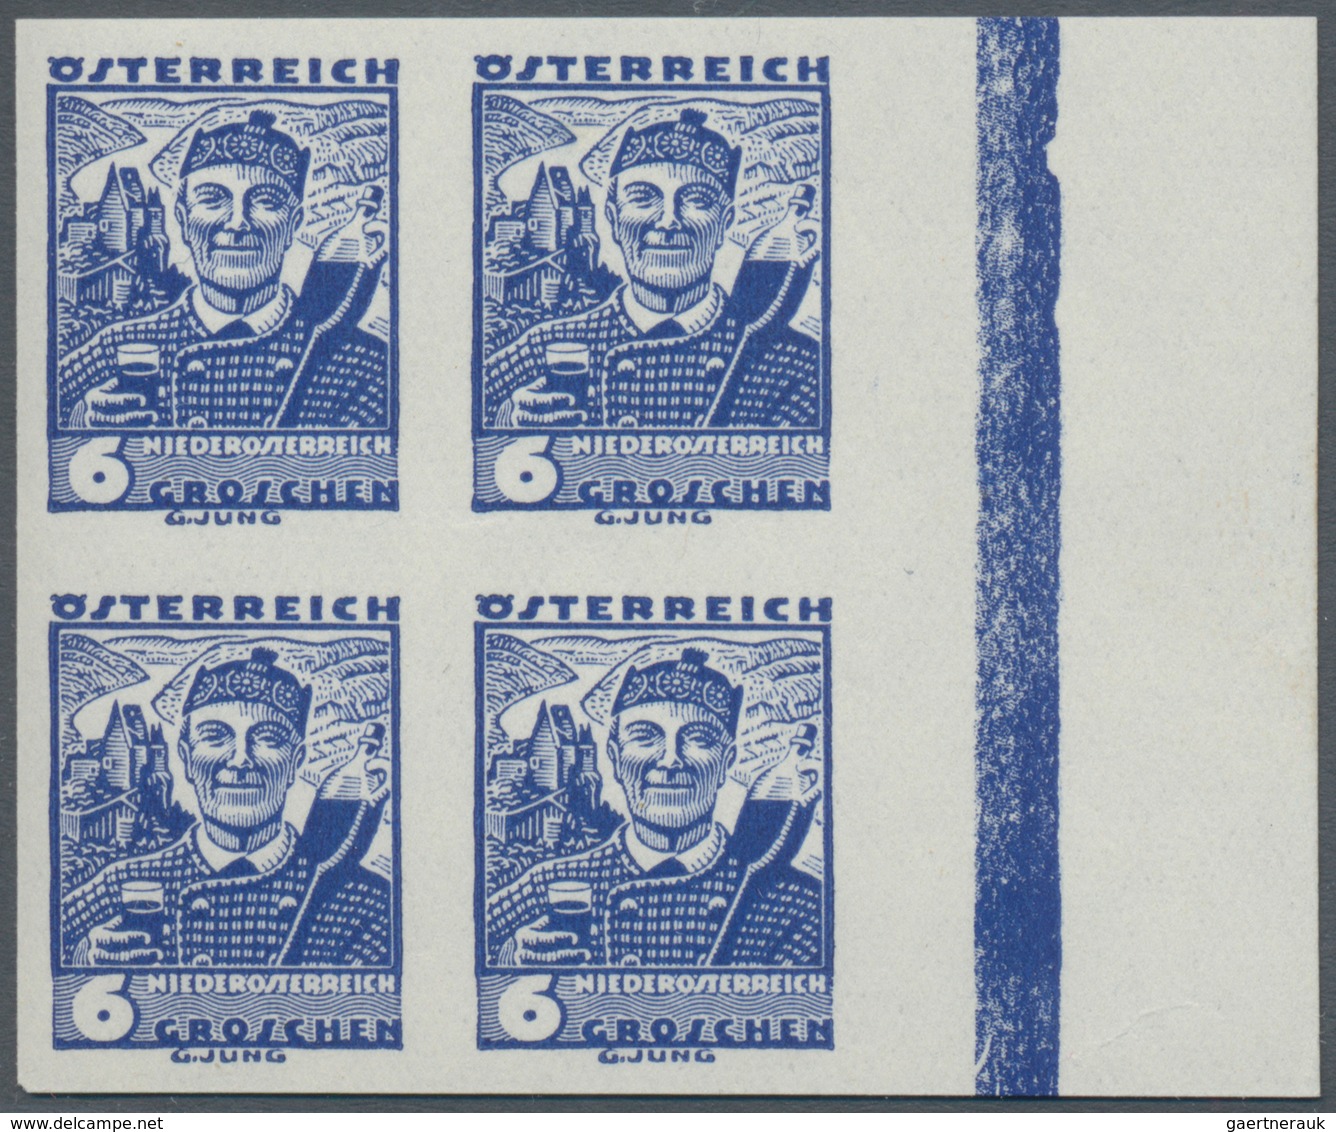 Österreich: 1934, Freimarken Trachten, 1 Gr. bis 1 Sch., 15 verschiedene Werte je in Rand-4er-Blocks